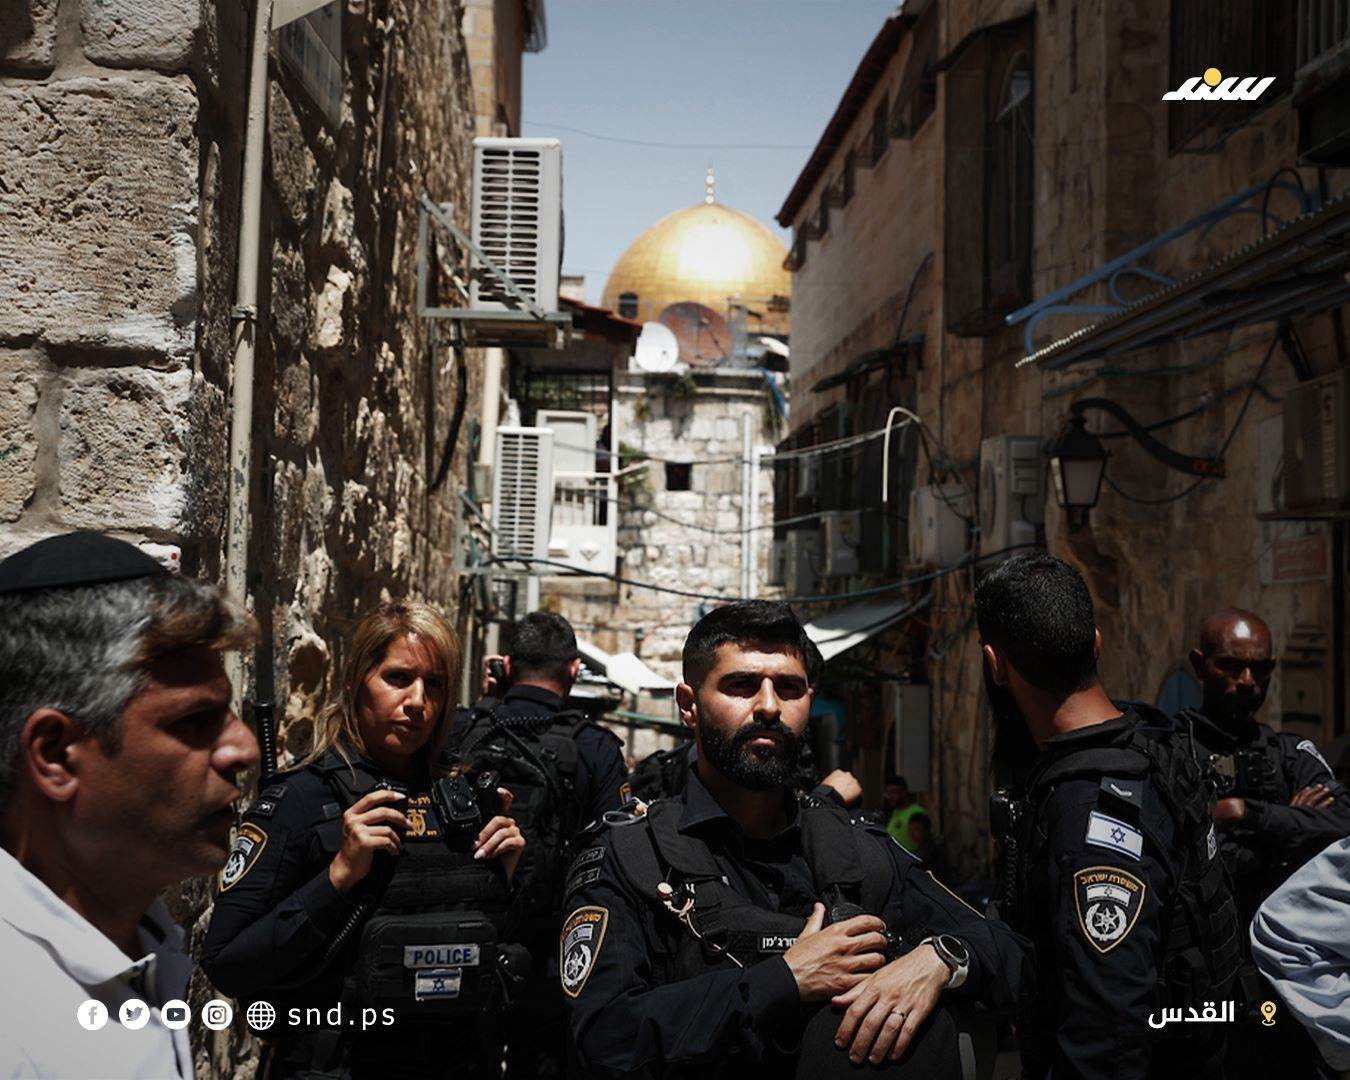 وقفة تضامنية مع عائلة صب لبن بالبلدة القديمة في القدس احتجاجا على تهجيرها قسريا من منزلها (5).jpg